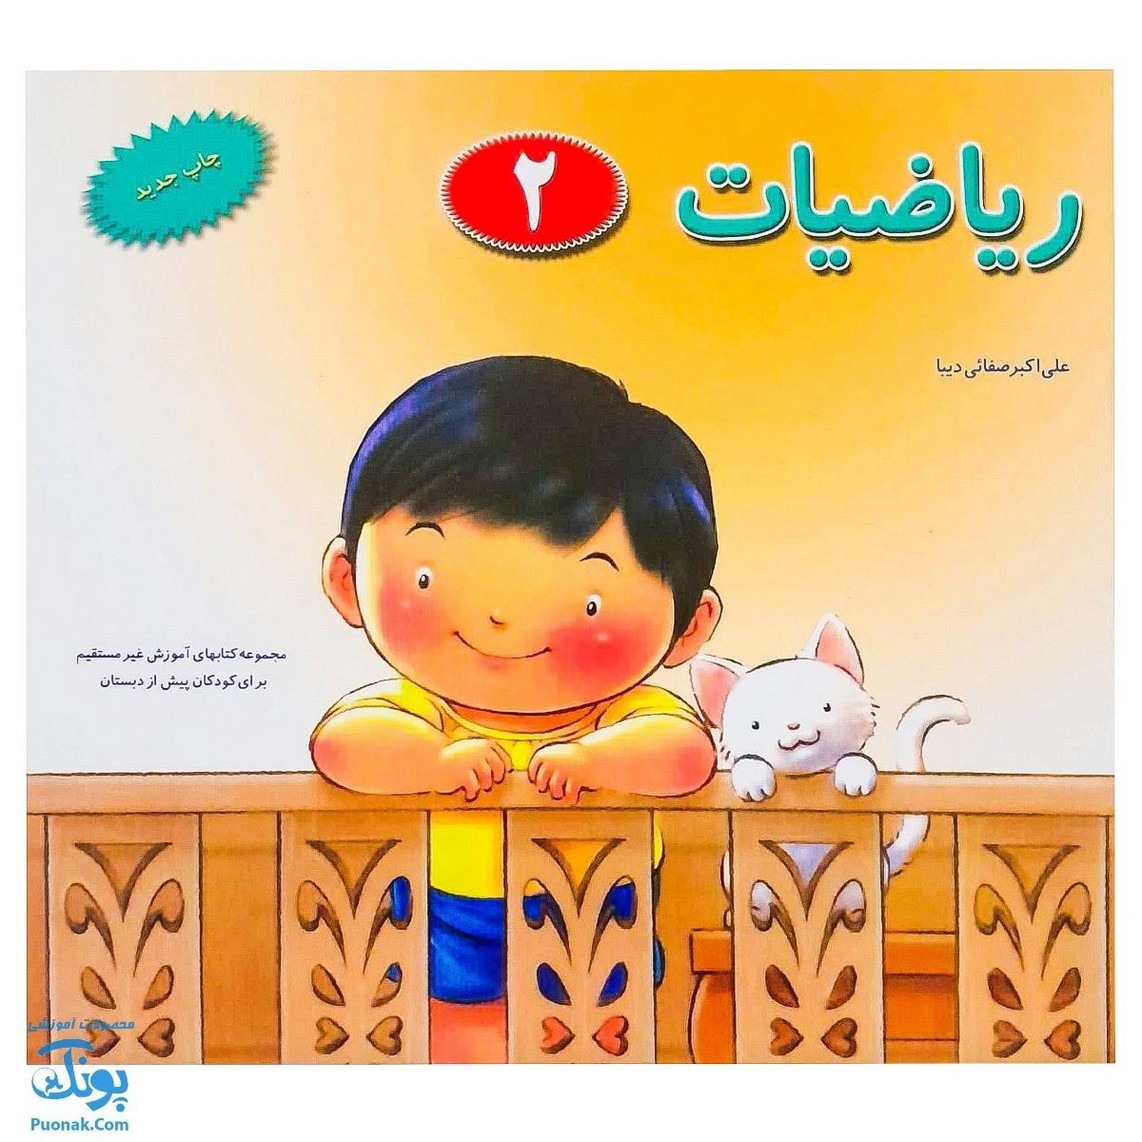 کتاب آموزشی ریاضیات ۲ مجموعه کتابهای آموزش غیر مستقیم برای کودکان پیش از دبستان